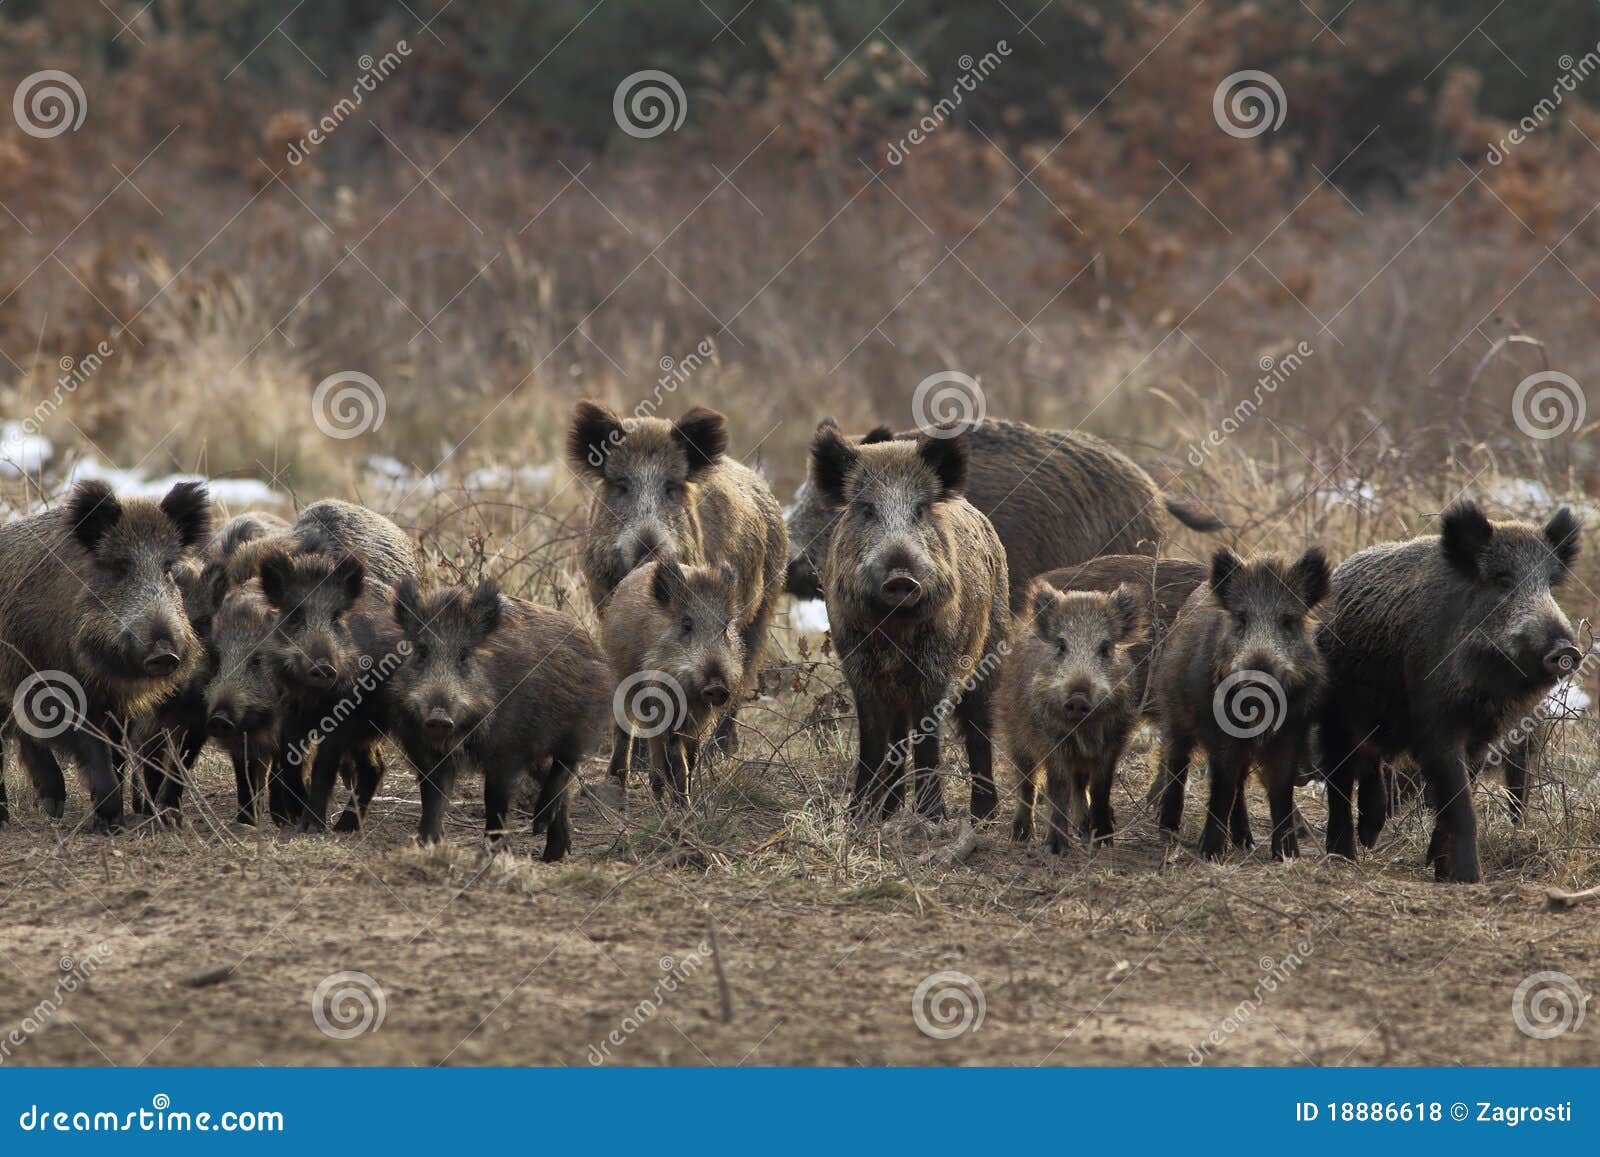 wild boar herd